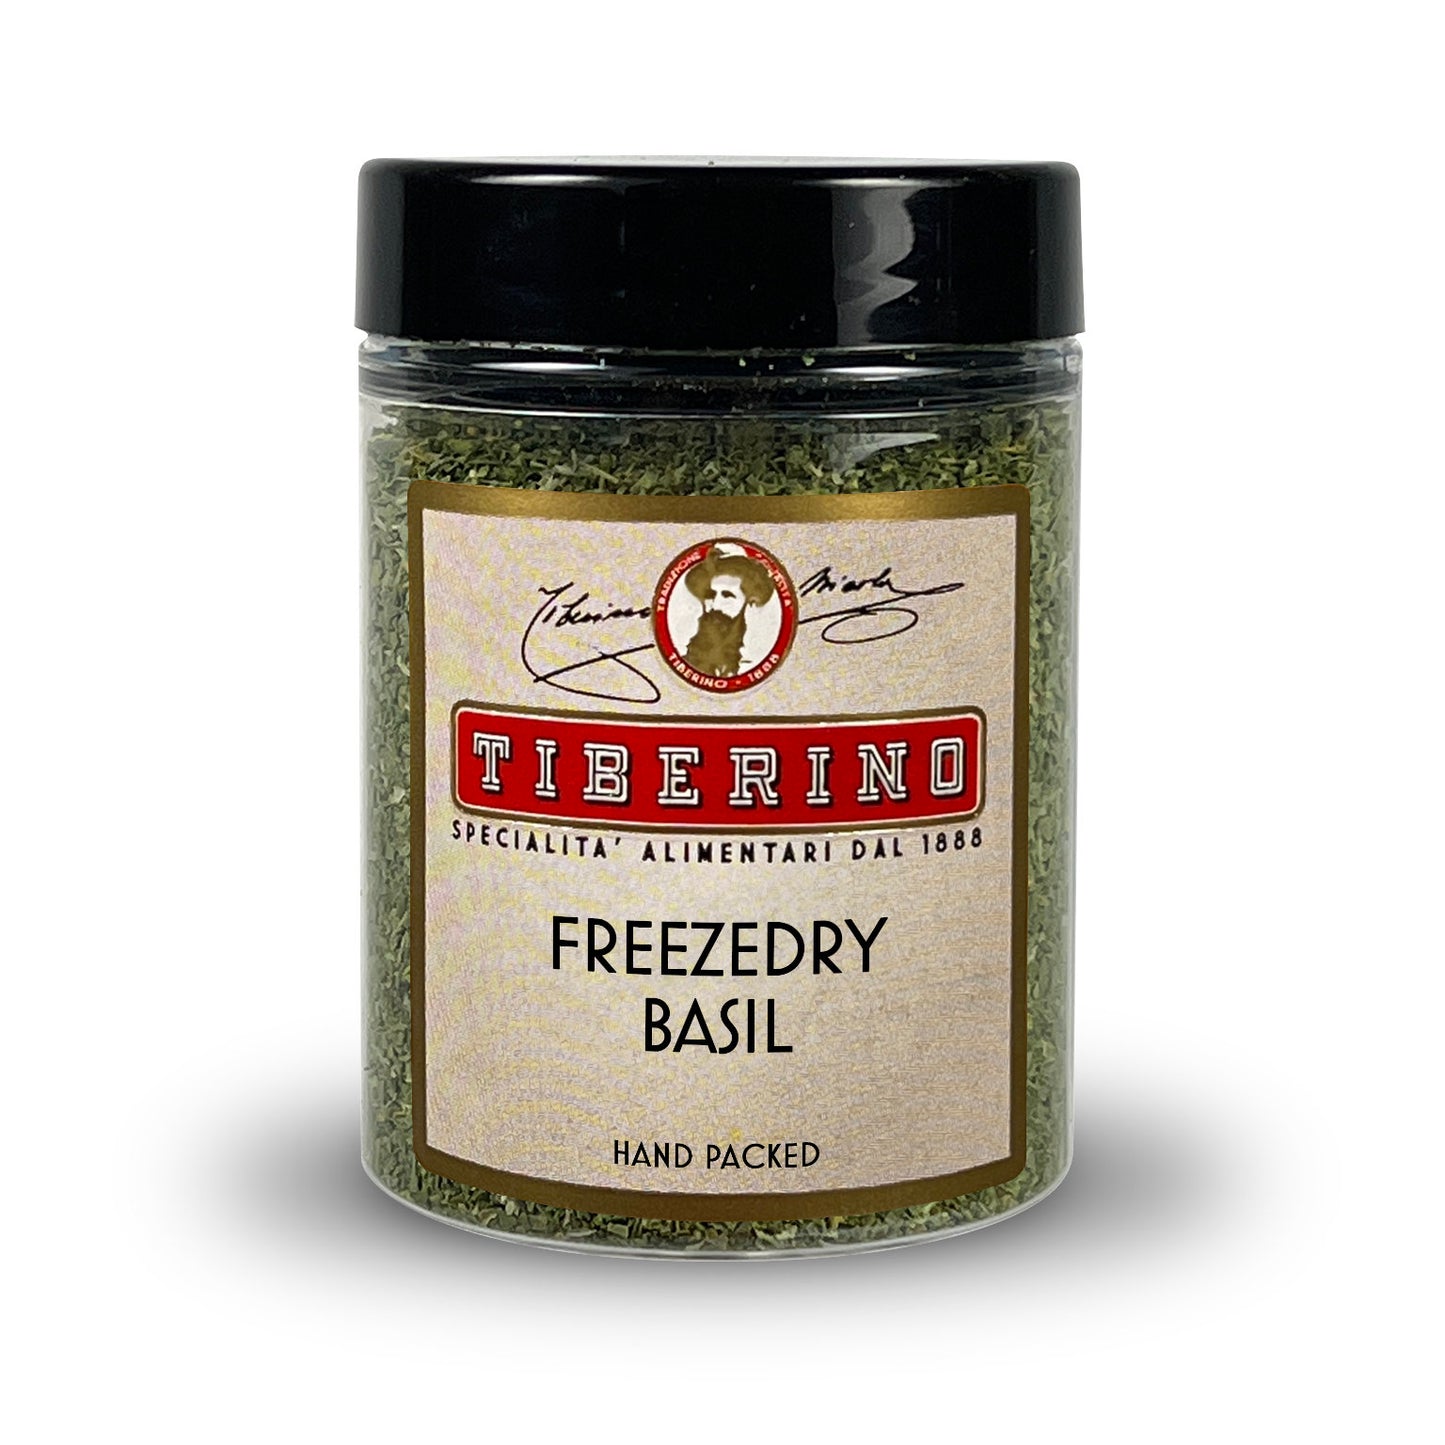 Freeze-dried basil